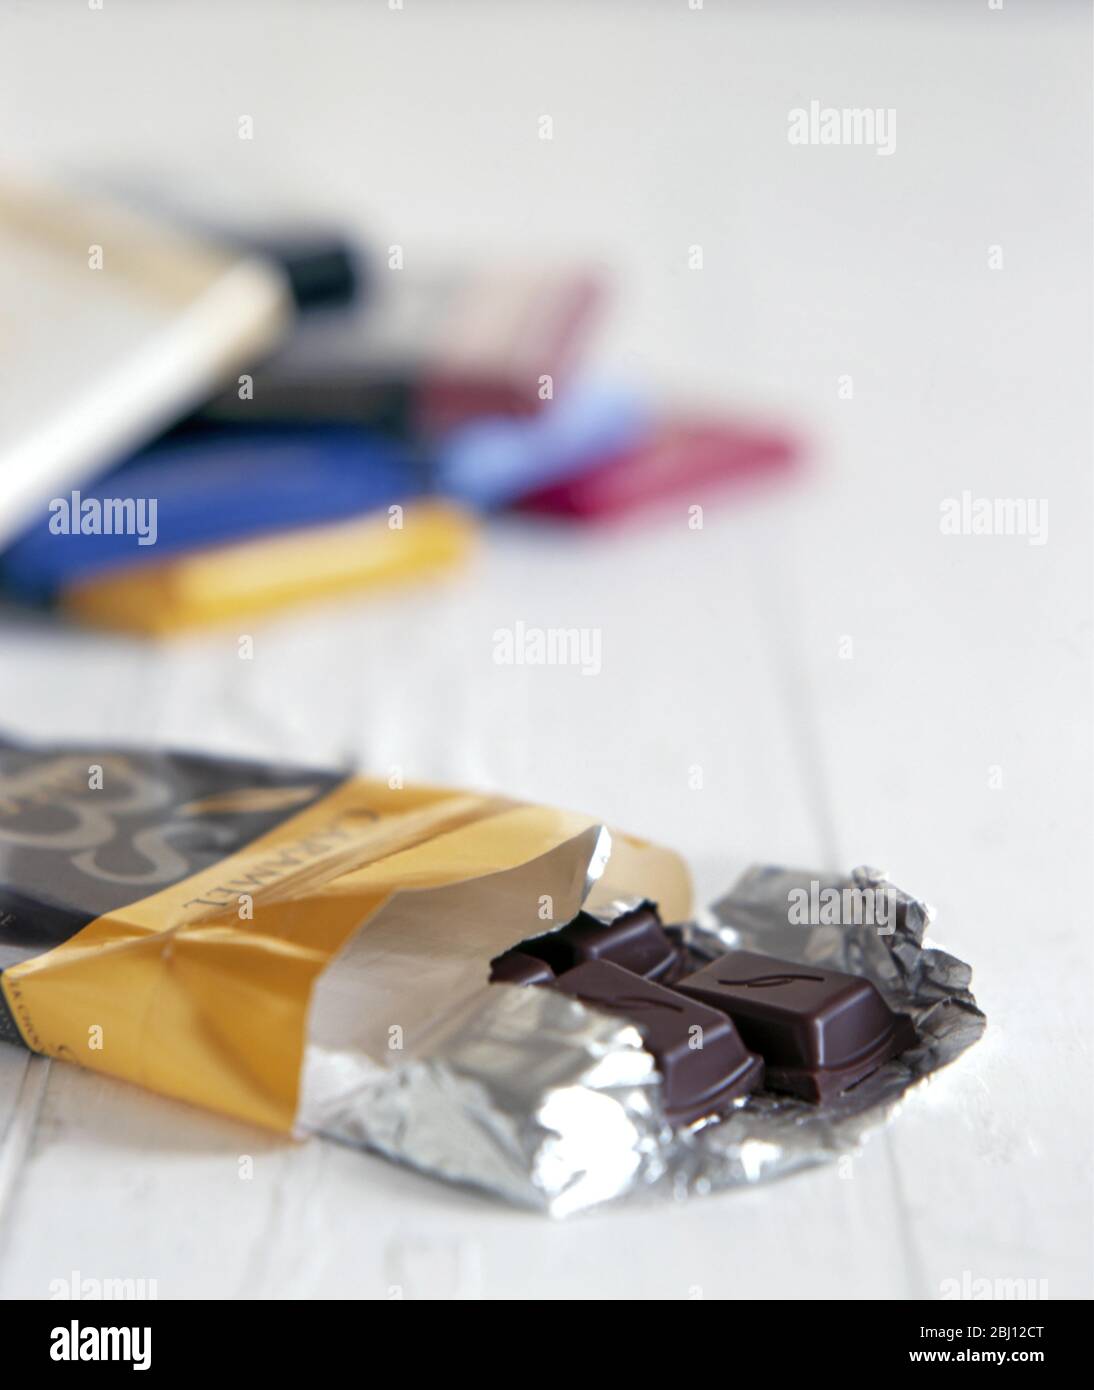 Auswahl an Schokoriegel mit einem vorne offenen Schokoriegel mit dunkler schlichter Schokolade - Stockfoto